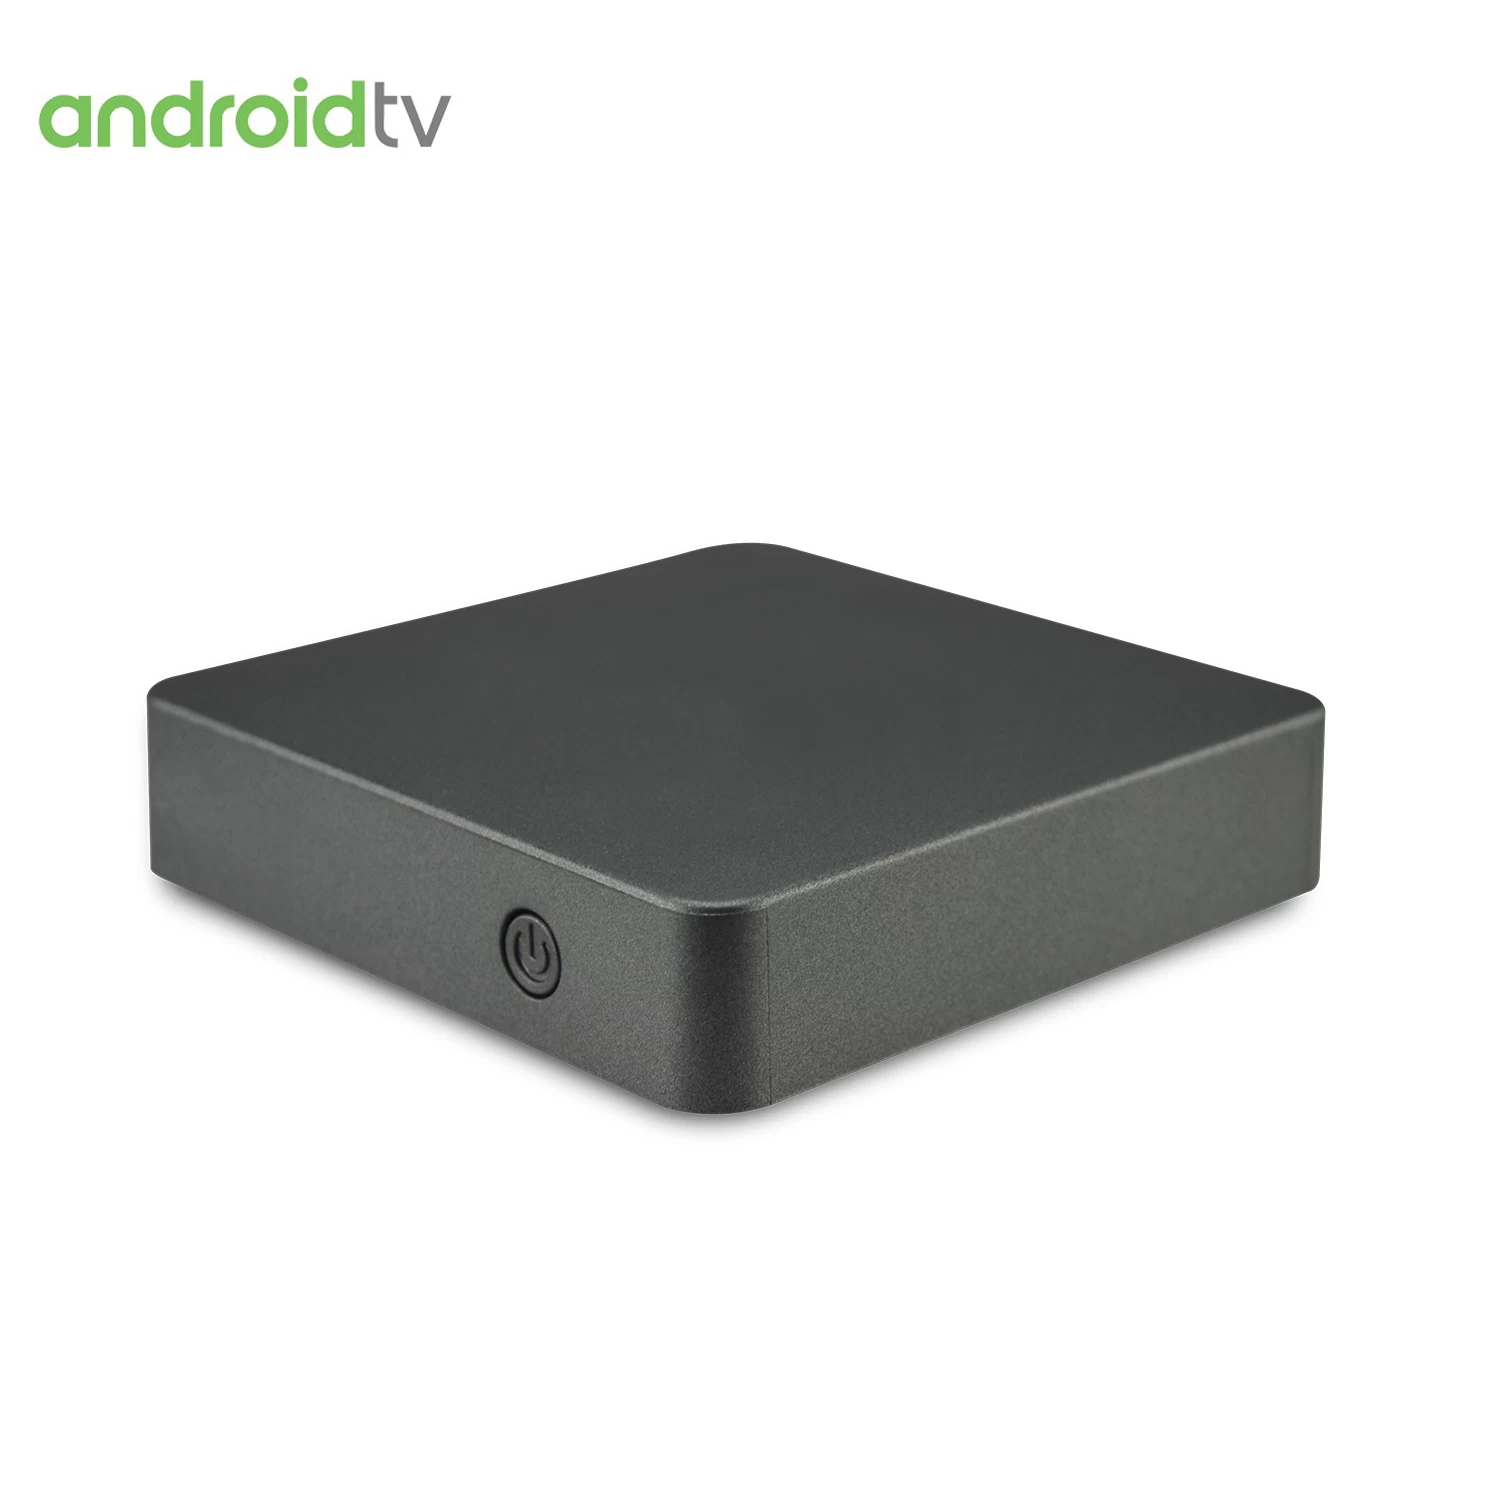 التحكم الصوتي من مساعد Google قادم إلى Android TV